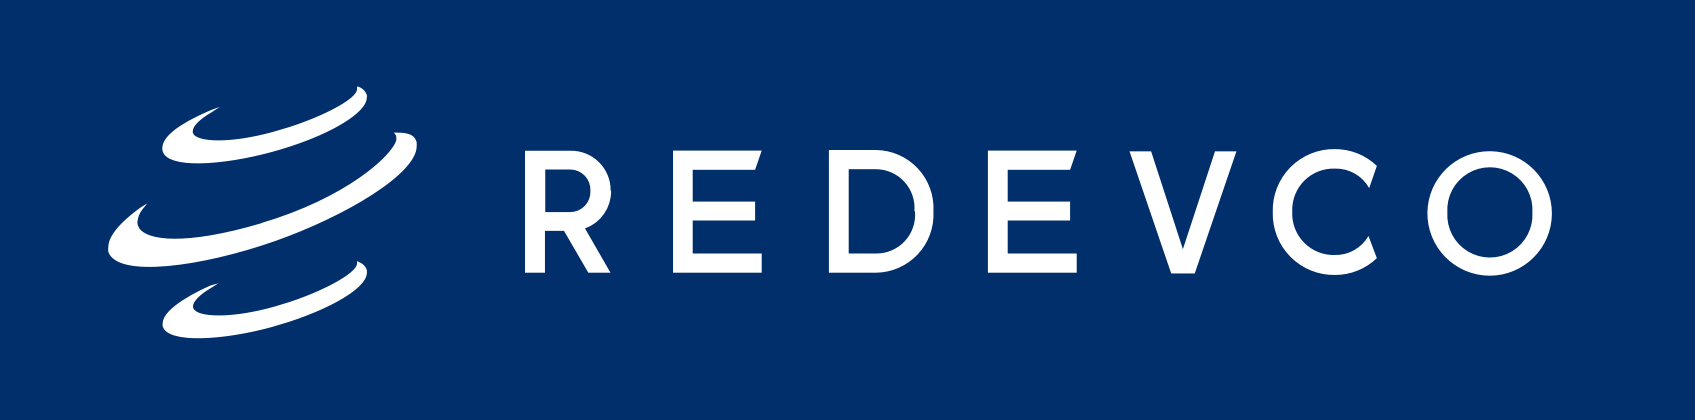 Redevco Services Deutschland GmbH